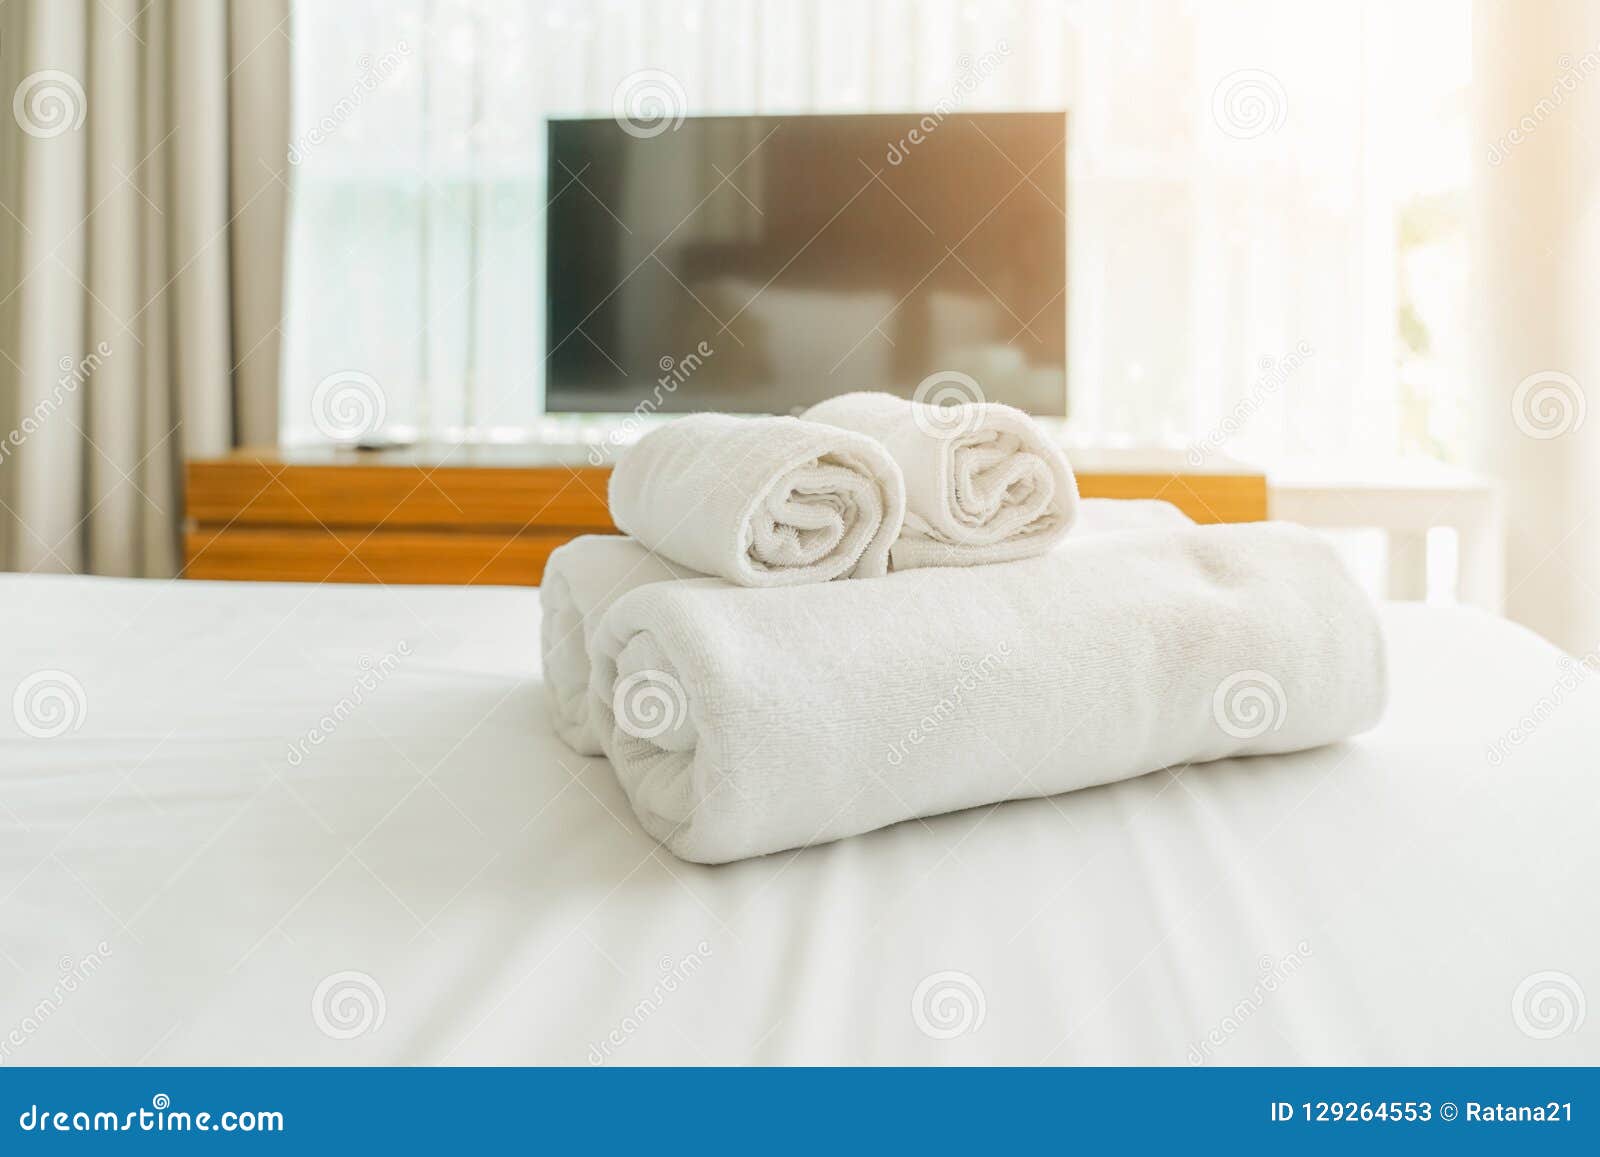 https://thumbs.dreamstime.com/z/white-fluffy-towels-bed-hotel-customer-white-towels-bed-hotel-customer-129264553.jpg